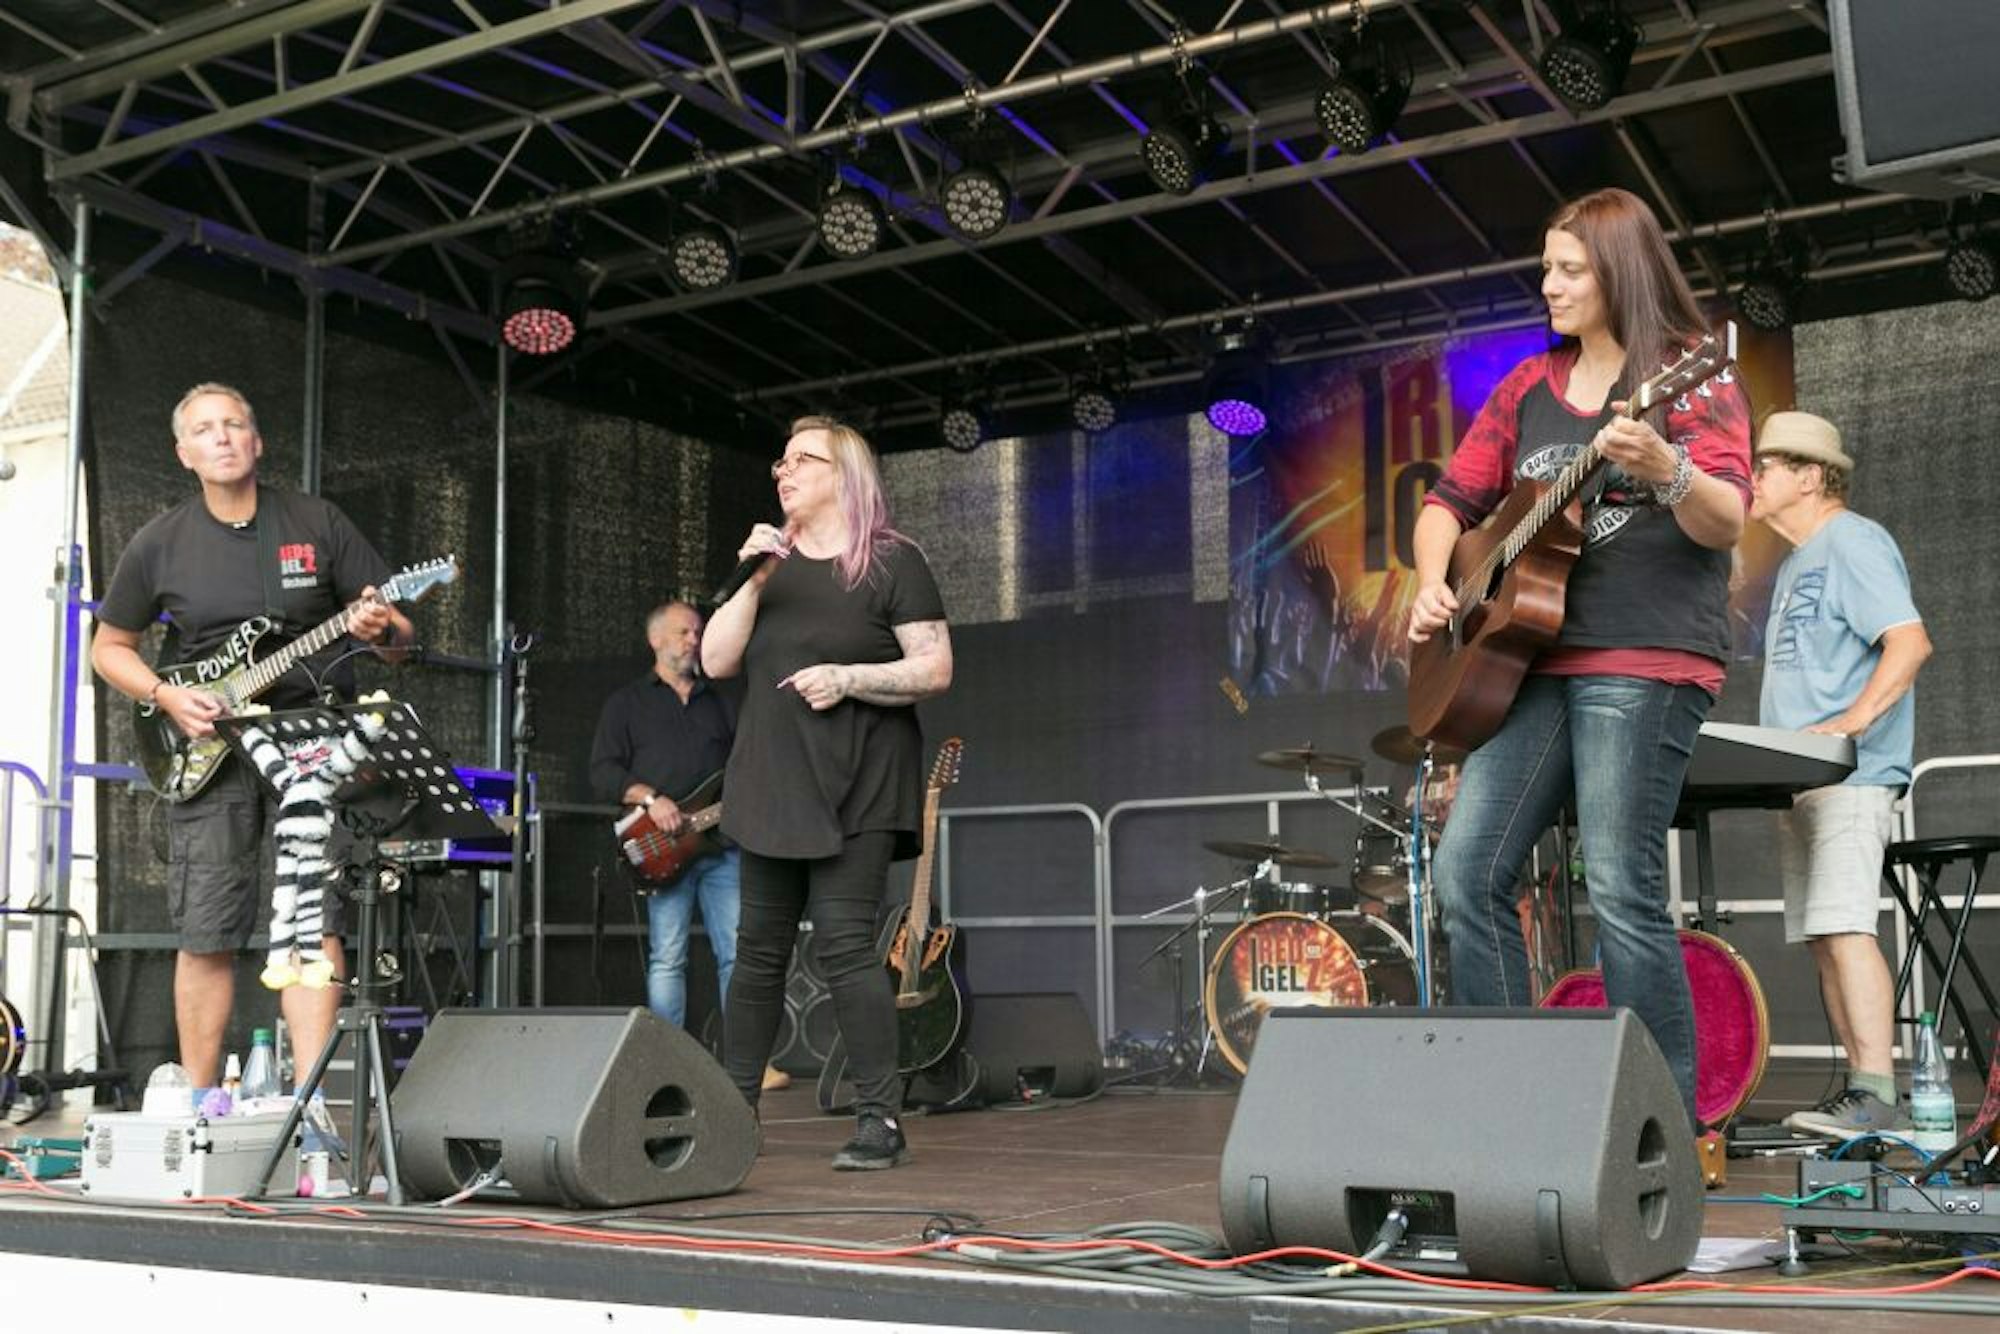 Der musikalische Schwerpunkt der Morsbacher Band Red Igelz liegt auf Cover-Rock der 80er und 90er Jahre.